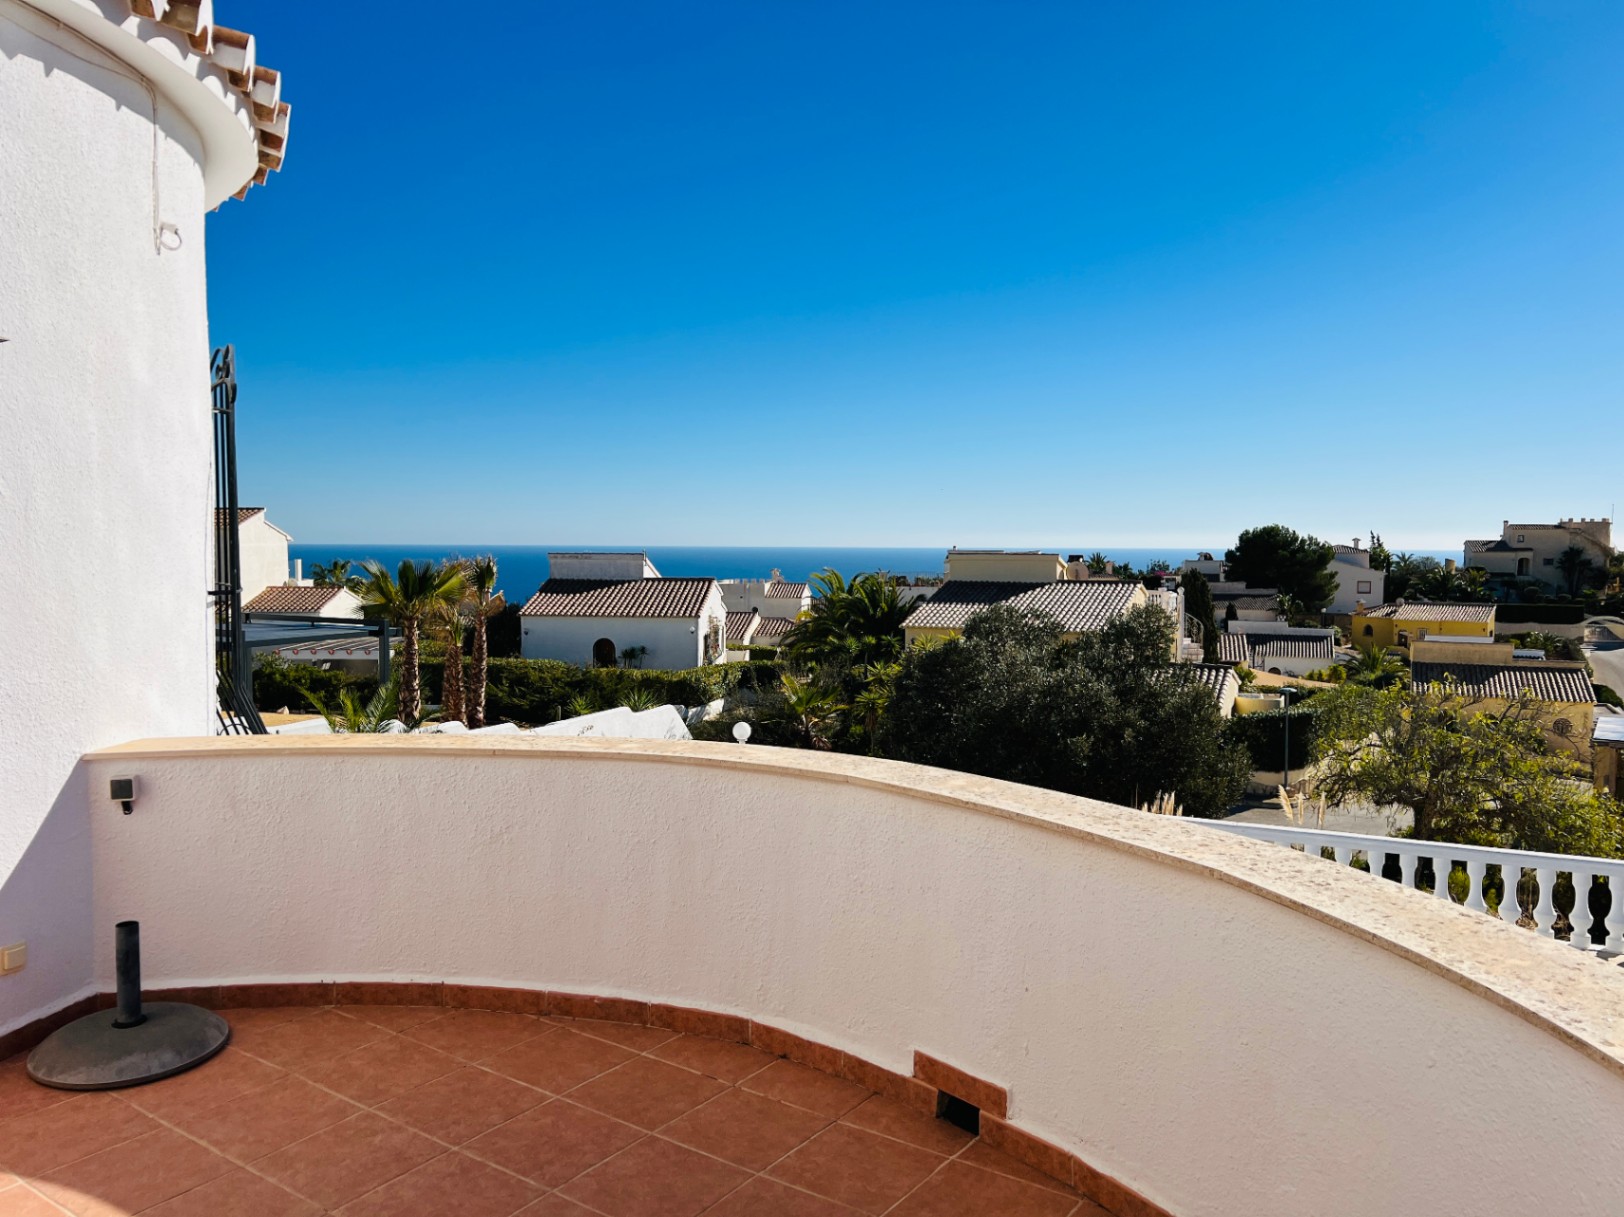 Mooie villa in Spaanse stijl met uitzicht op zee